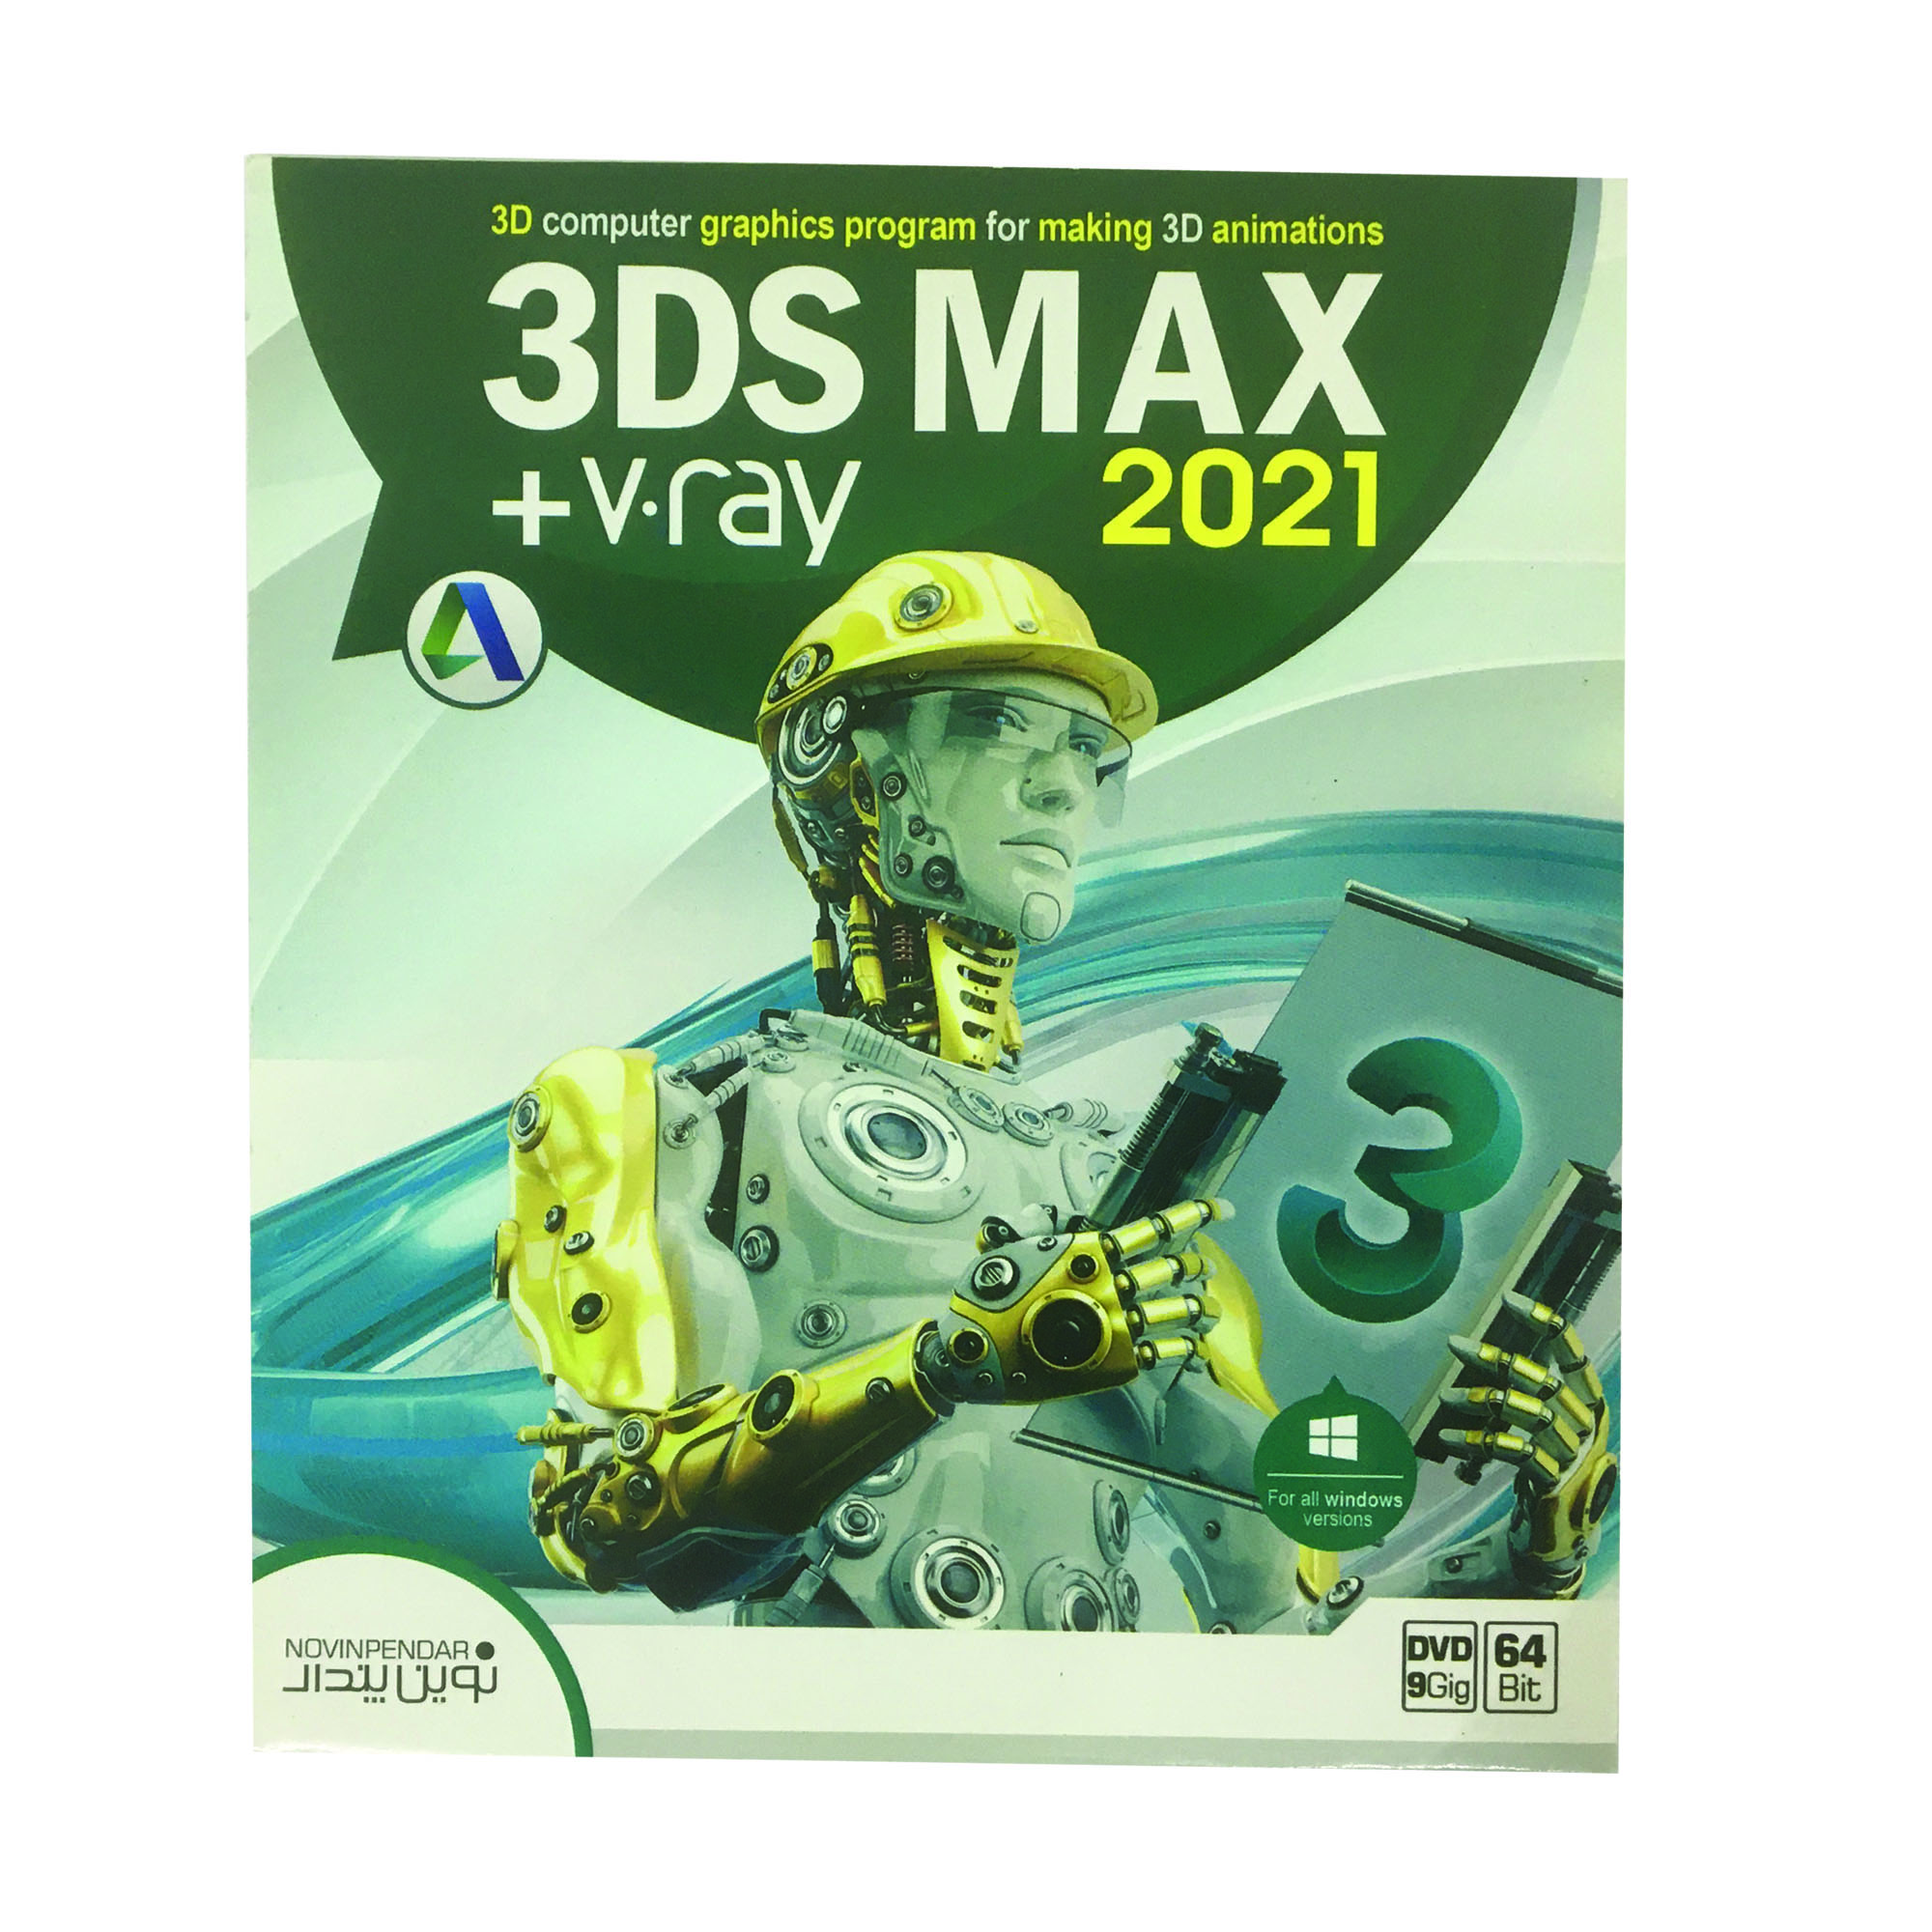 نرم افزار 3DS MAX 2021 + V.ray نشر نوین پندار